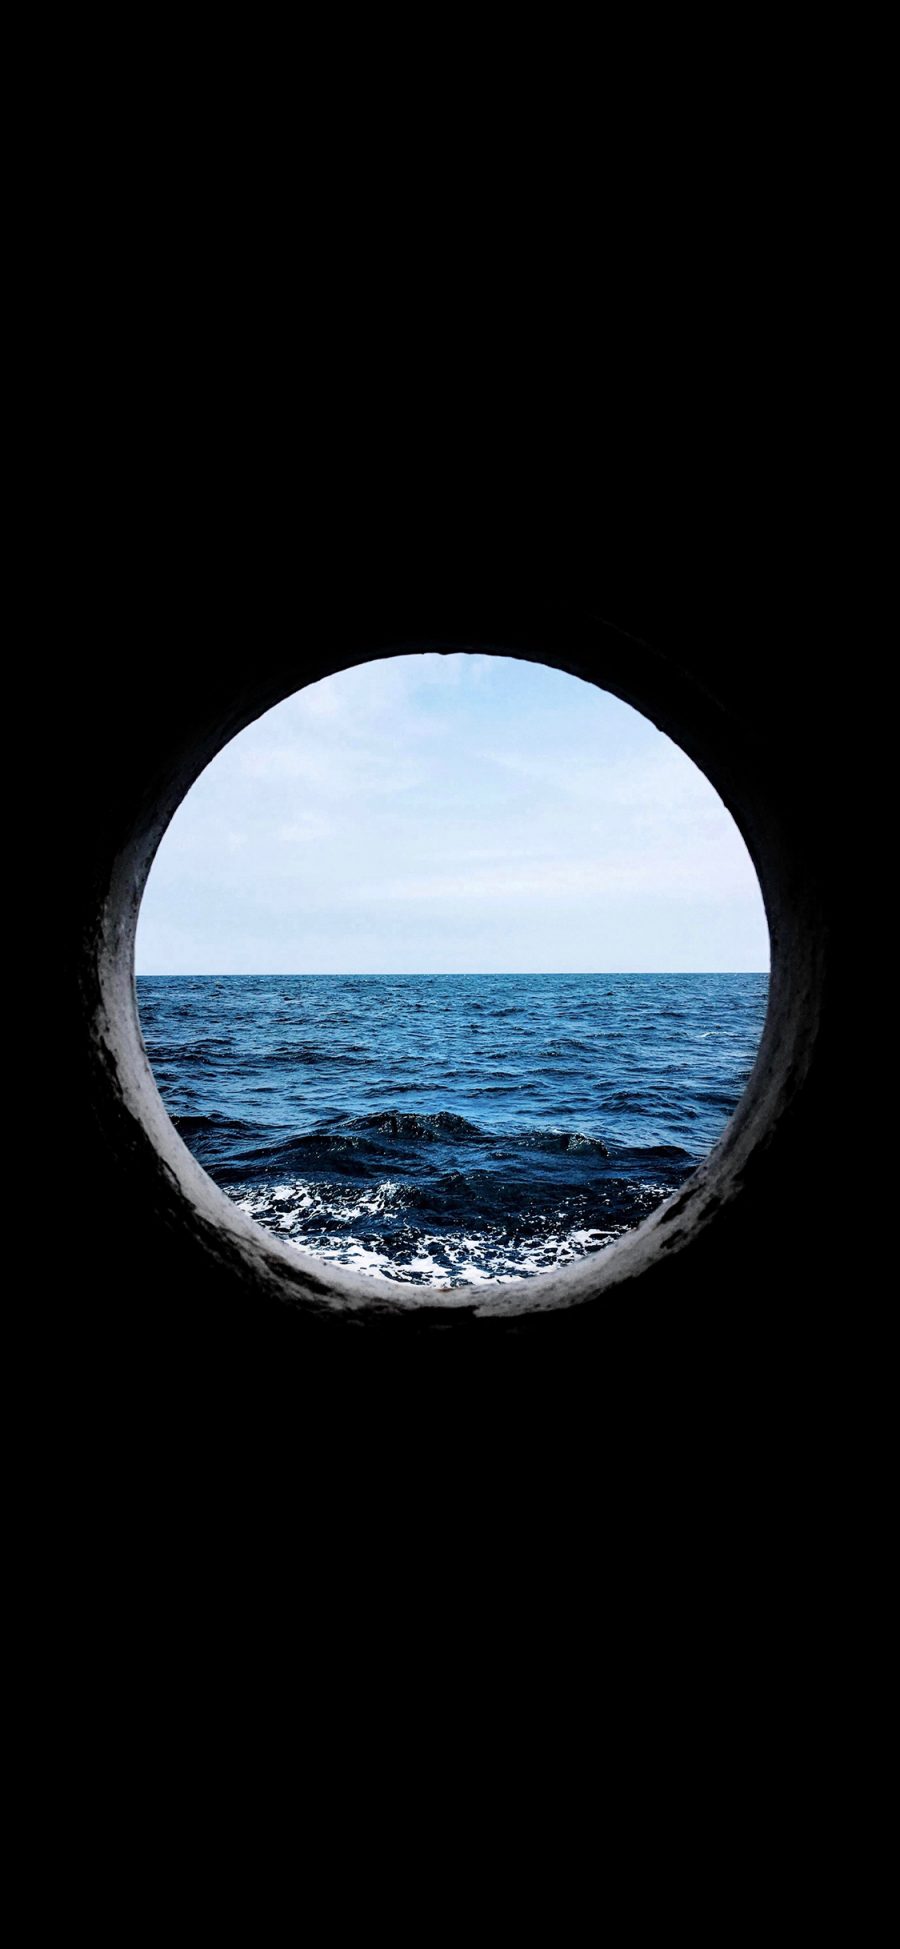 [2436×1125]大海 圆形 海面 海浪 黑色 苹果手机壁纸图片